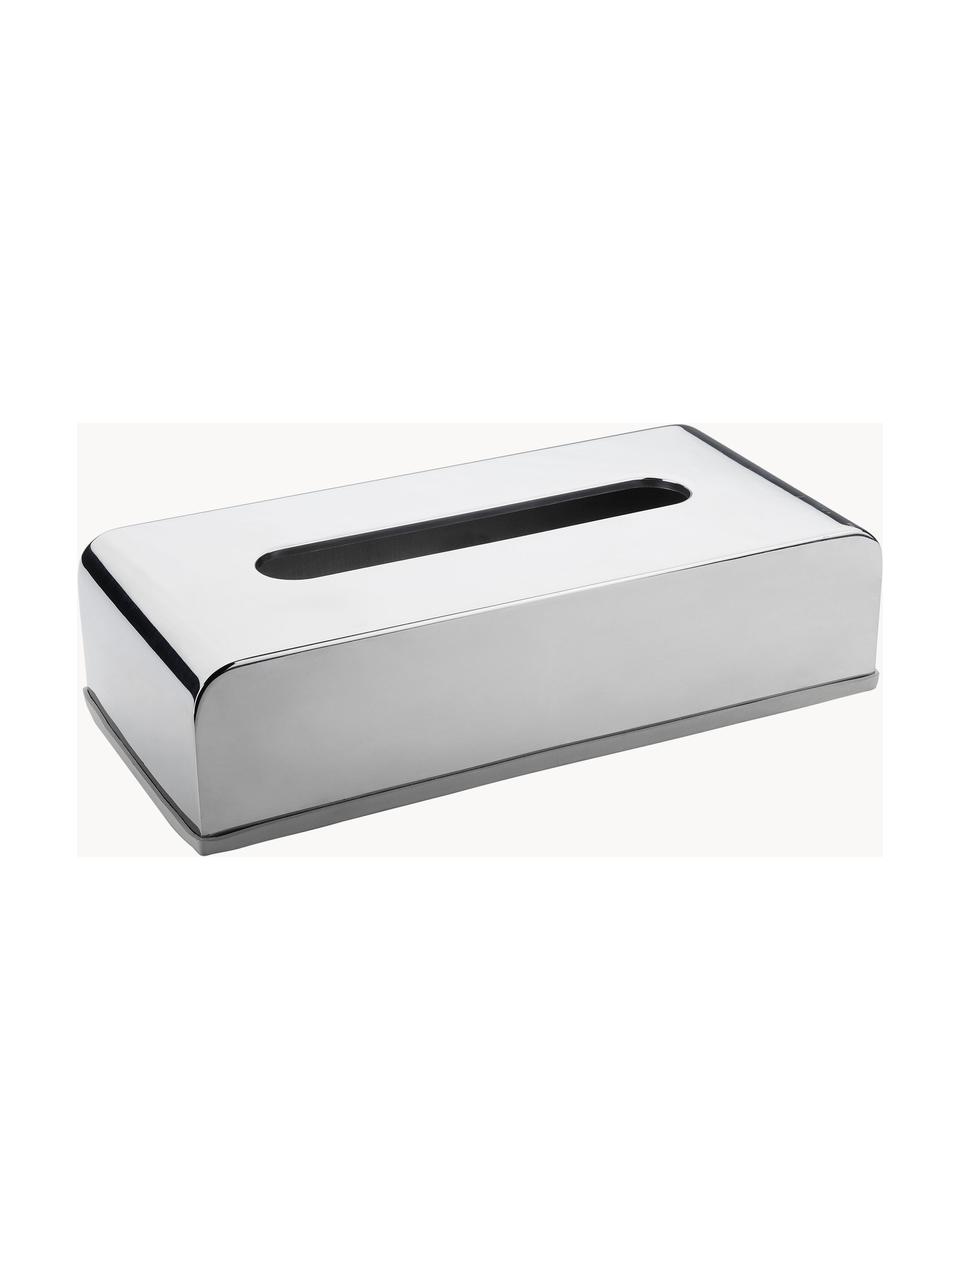 Kosmetiktuchbox Acton, Edelstahl, beschichtet, Silberfarben, B 26 x T 13 cm